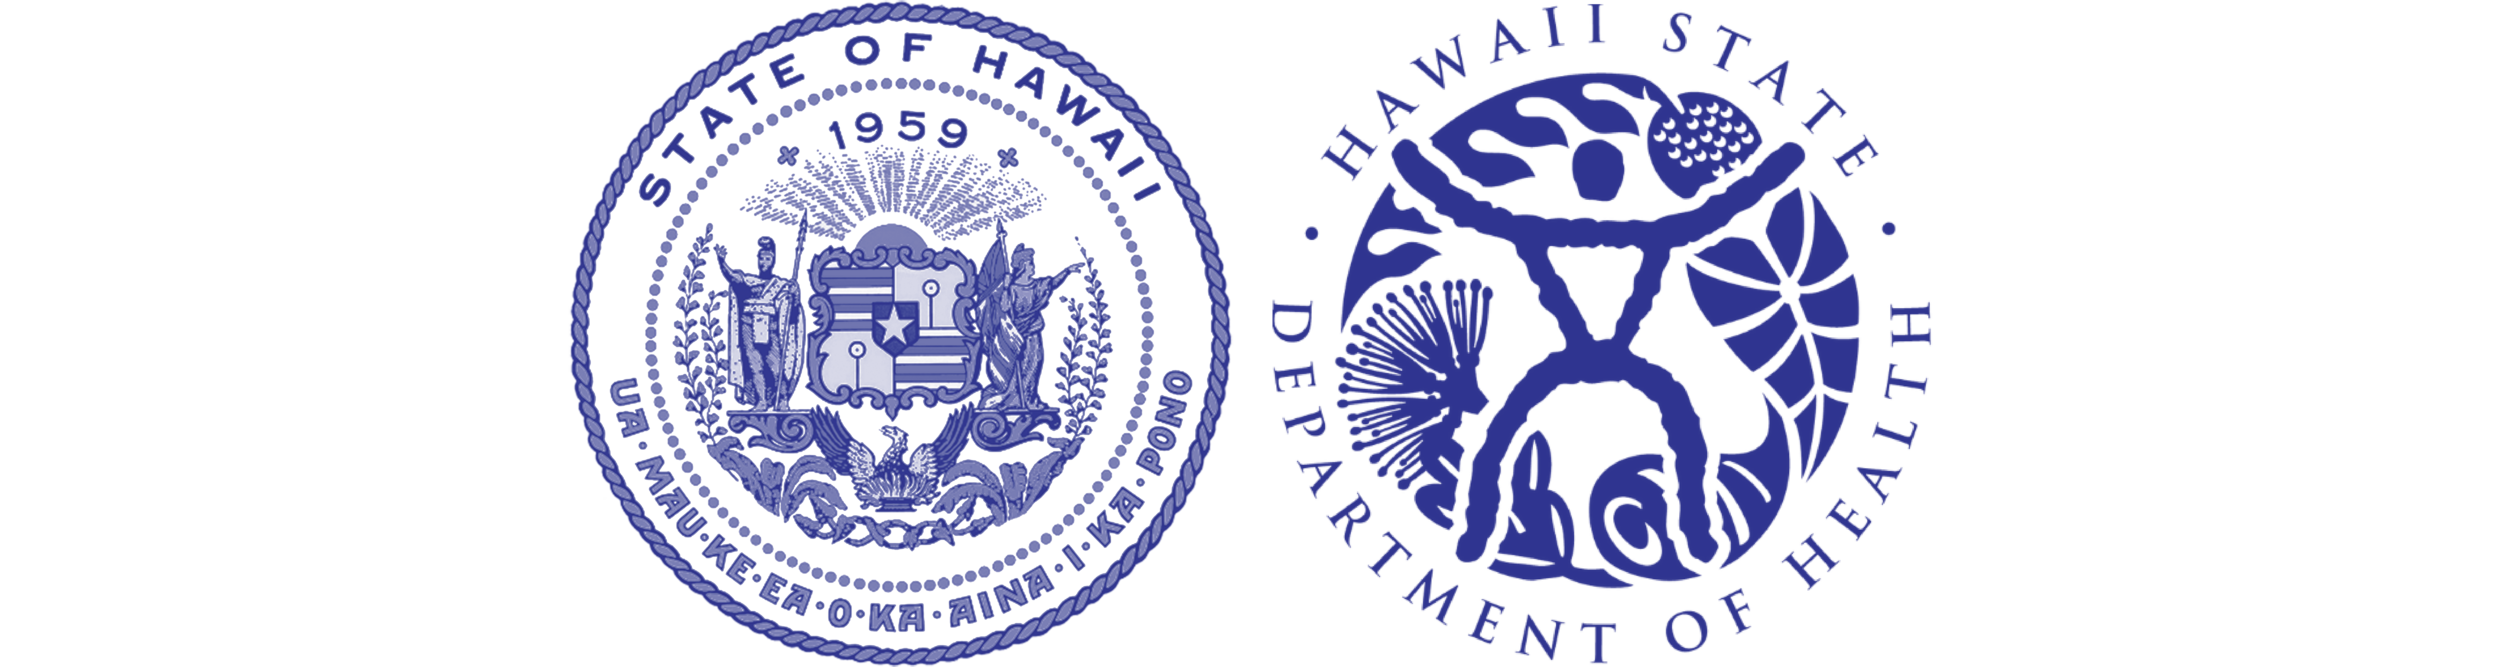 HPHA-ресурсы-лого-государство Гавайи-ДОХ.пнг